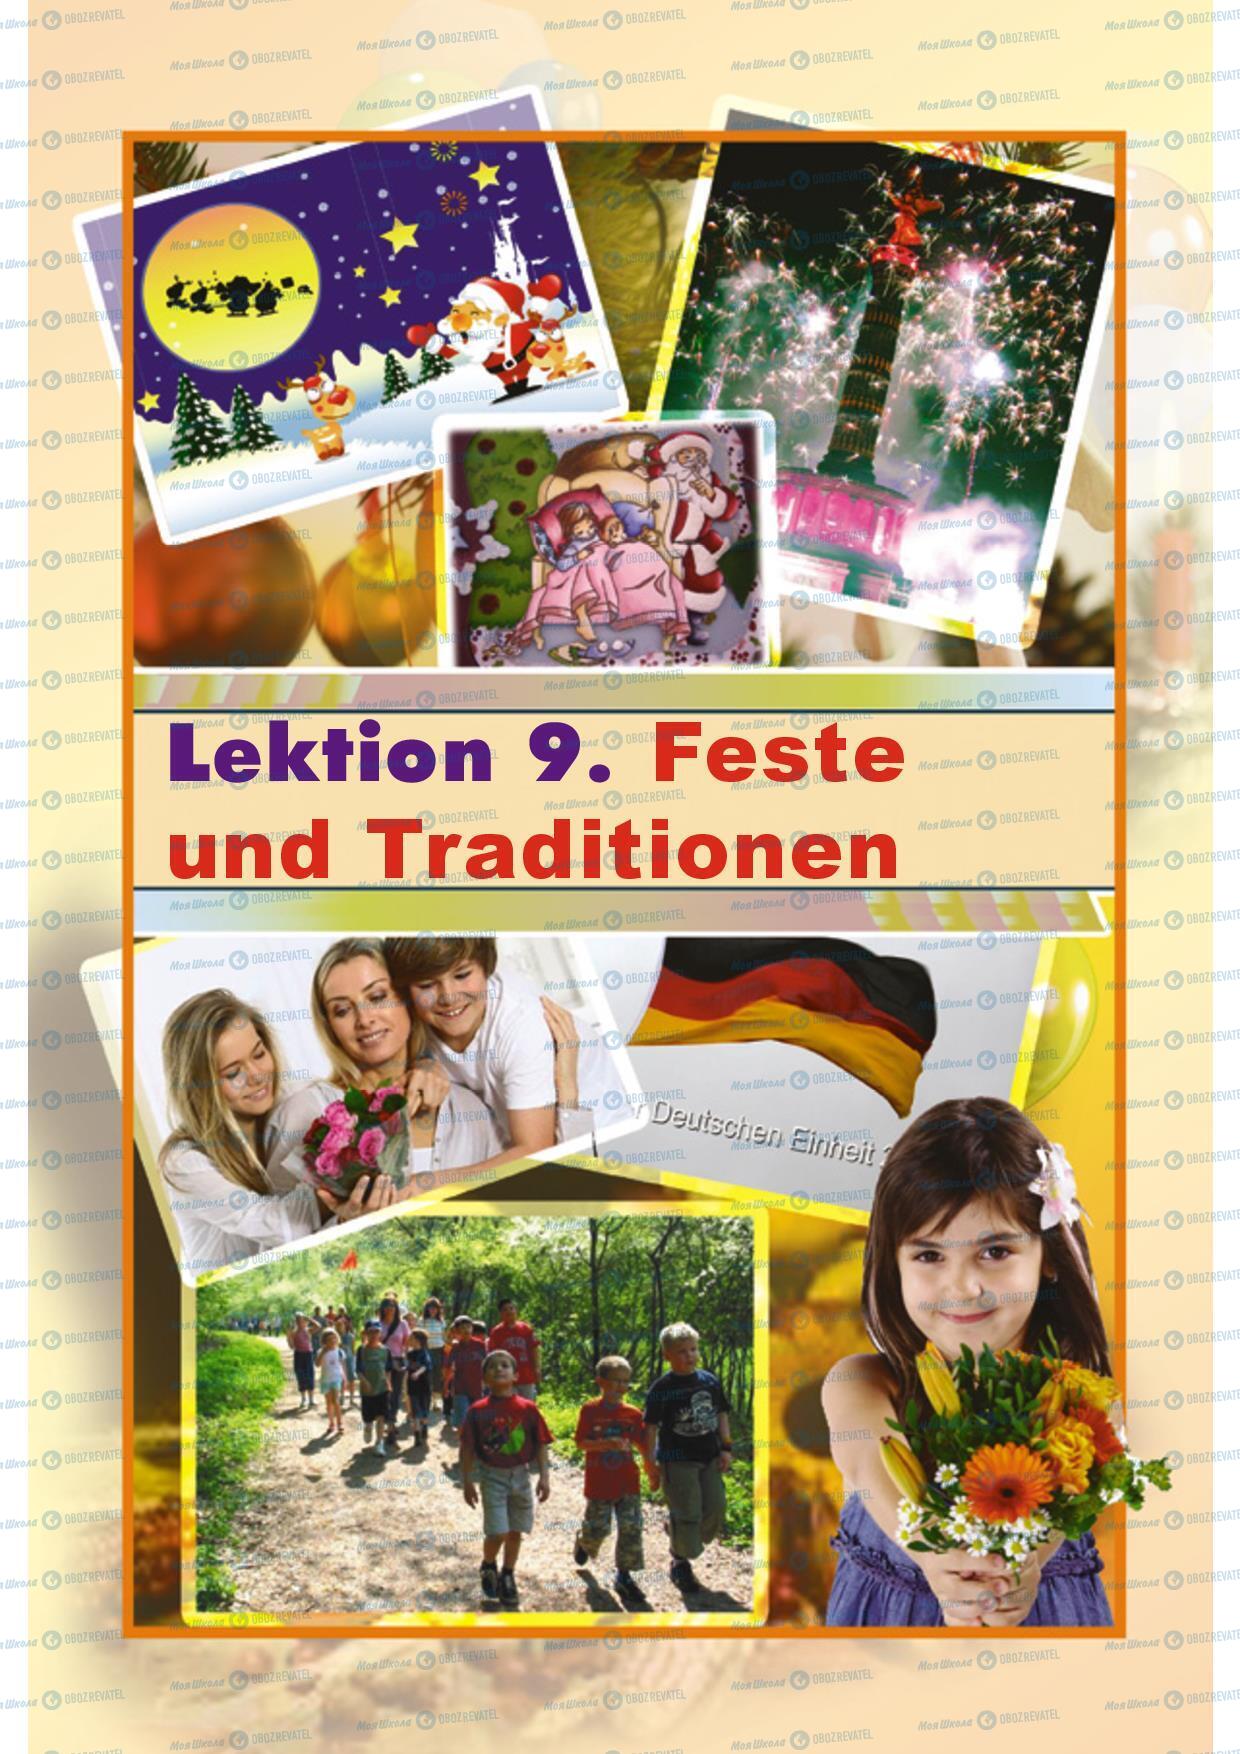 Учебники Немецкий язык 5 класс страница 220